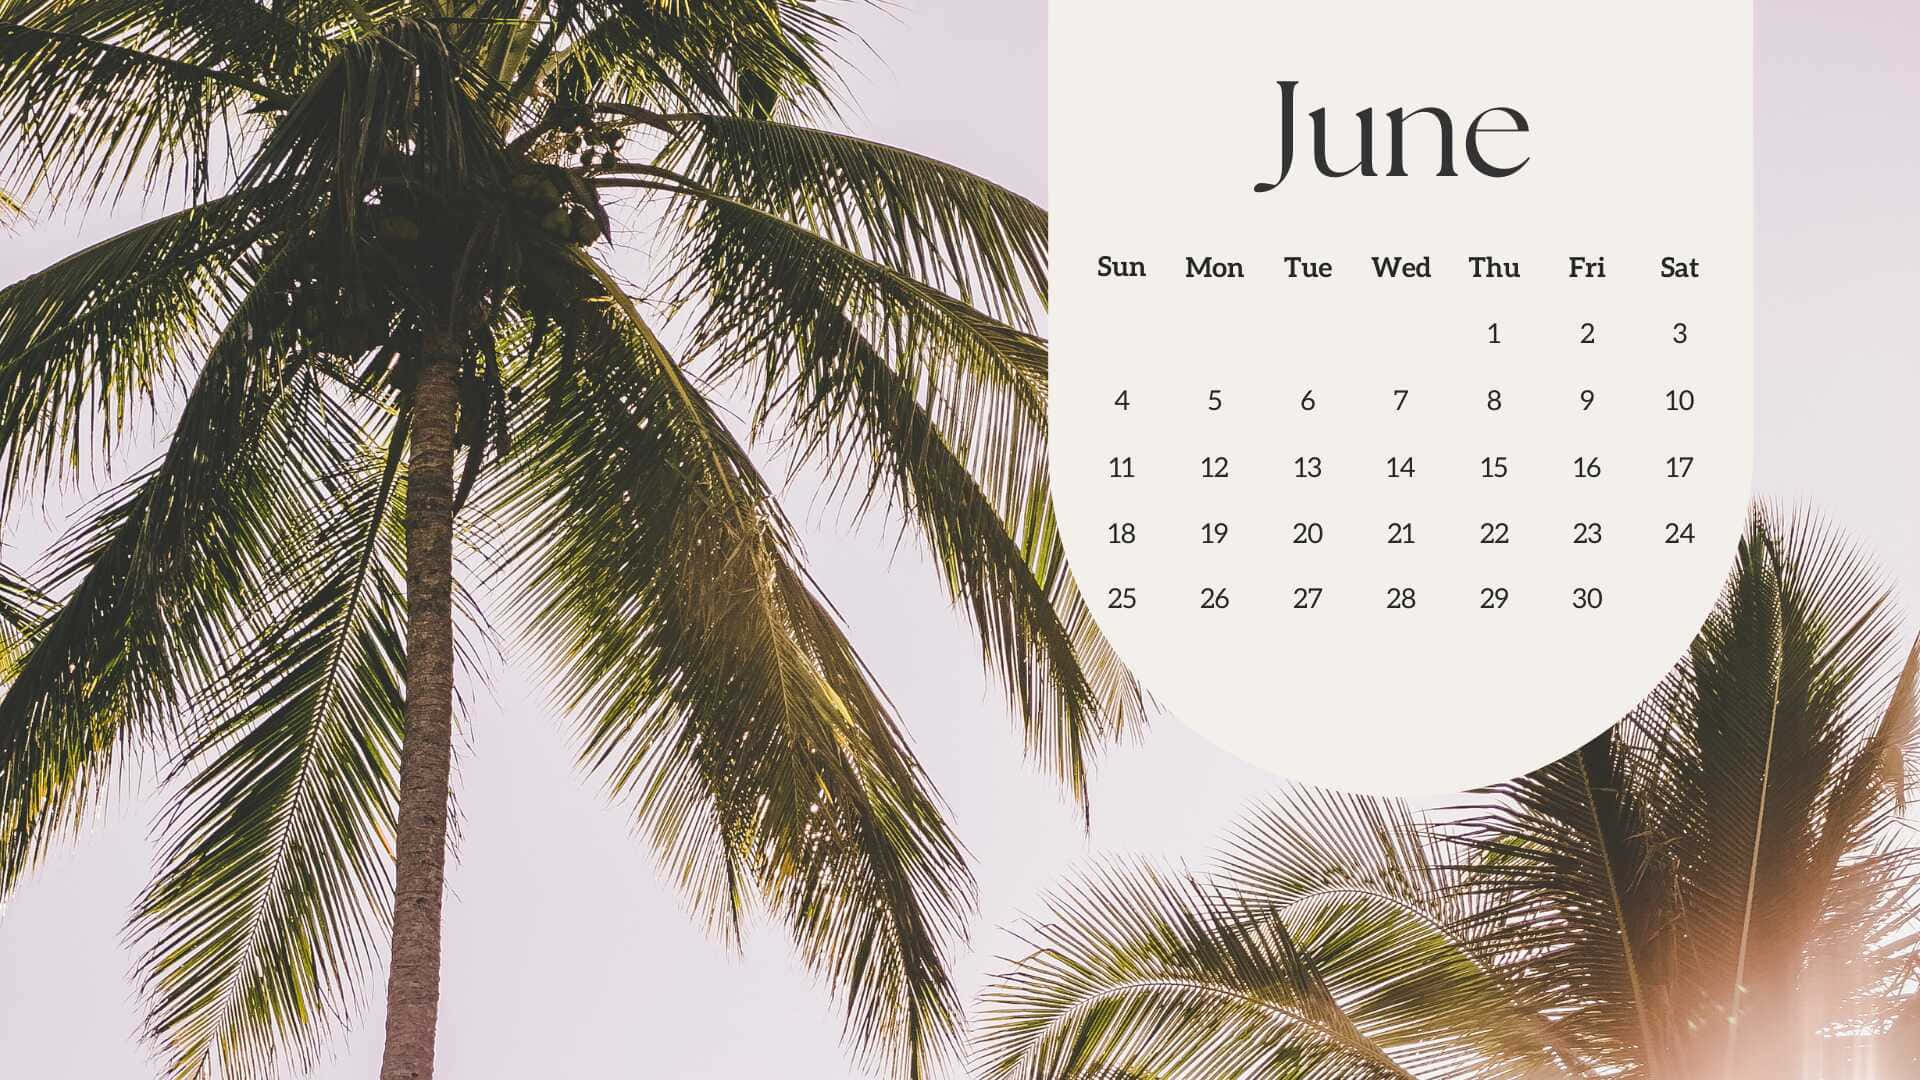 Tropical June Calendar Background Wallpaper